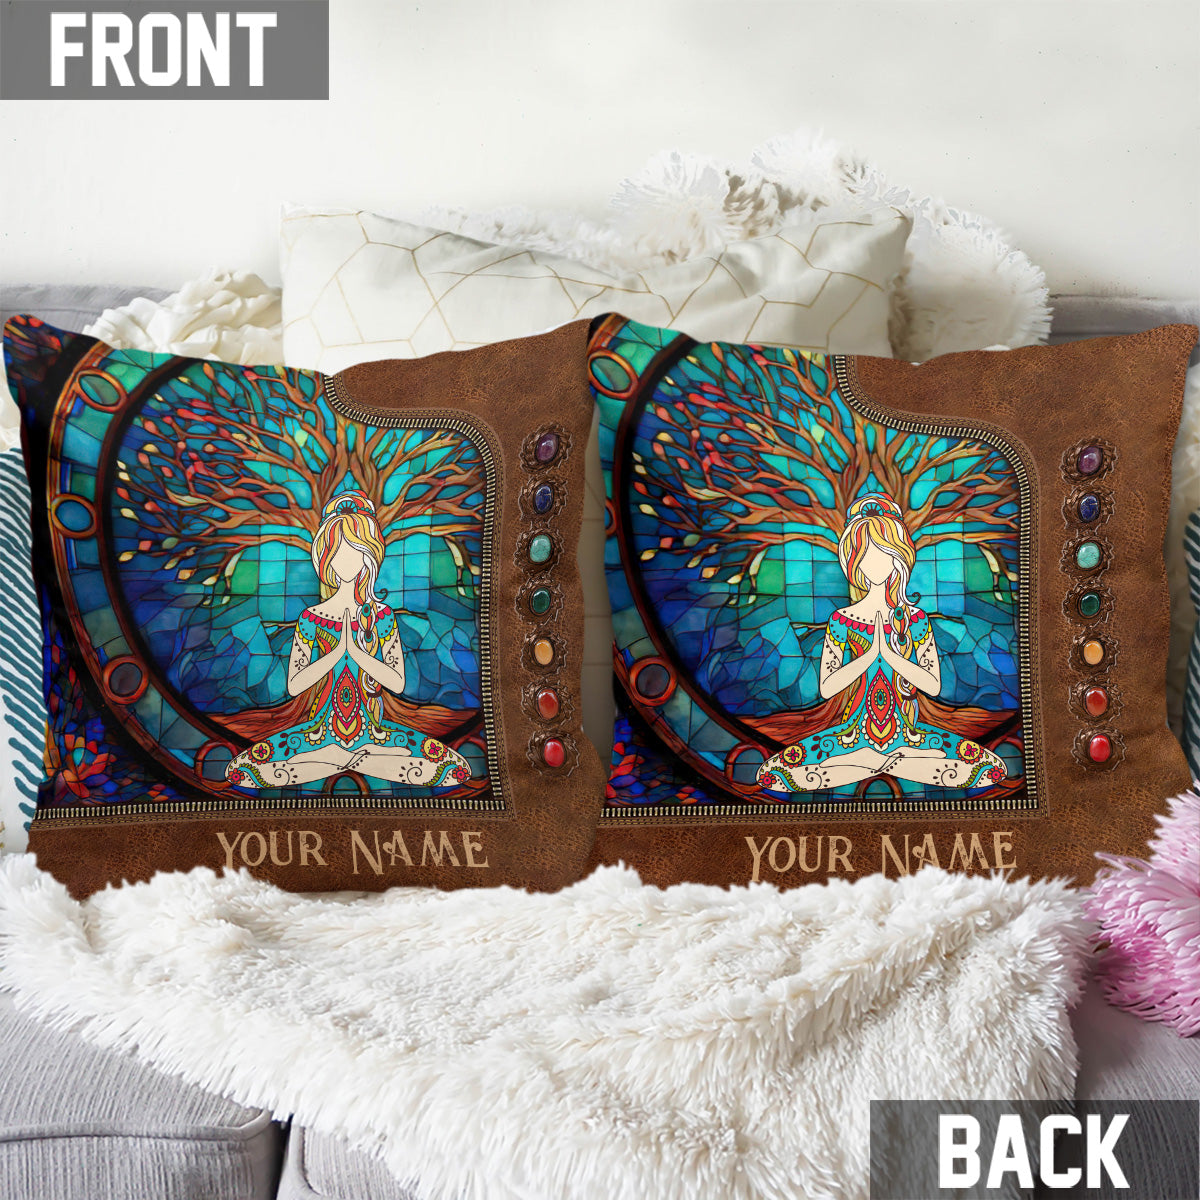 Namaste Green - Personalized Yoga Throw Pillow